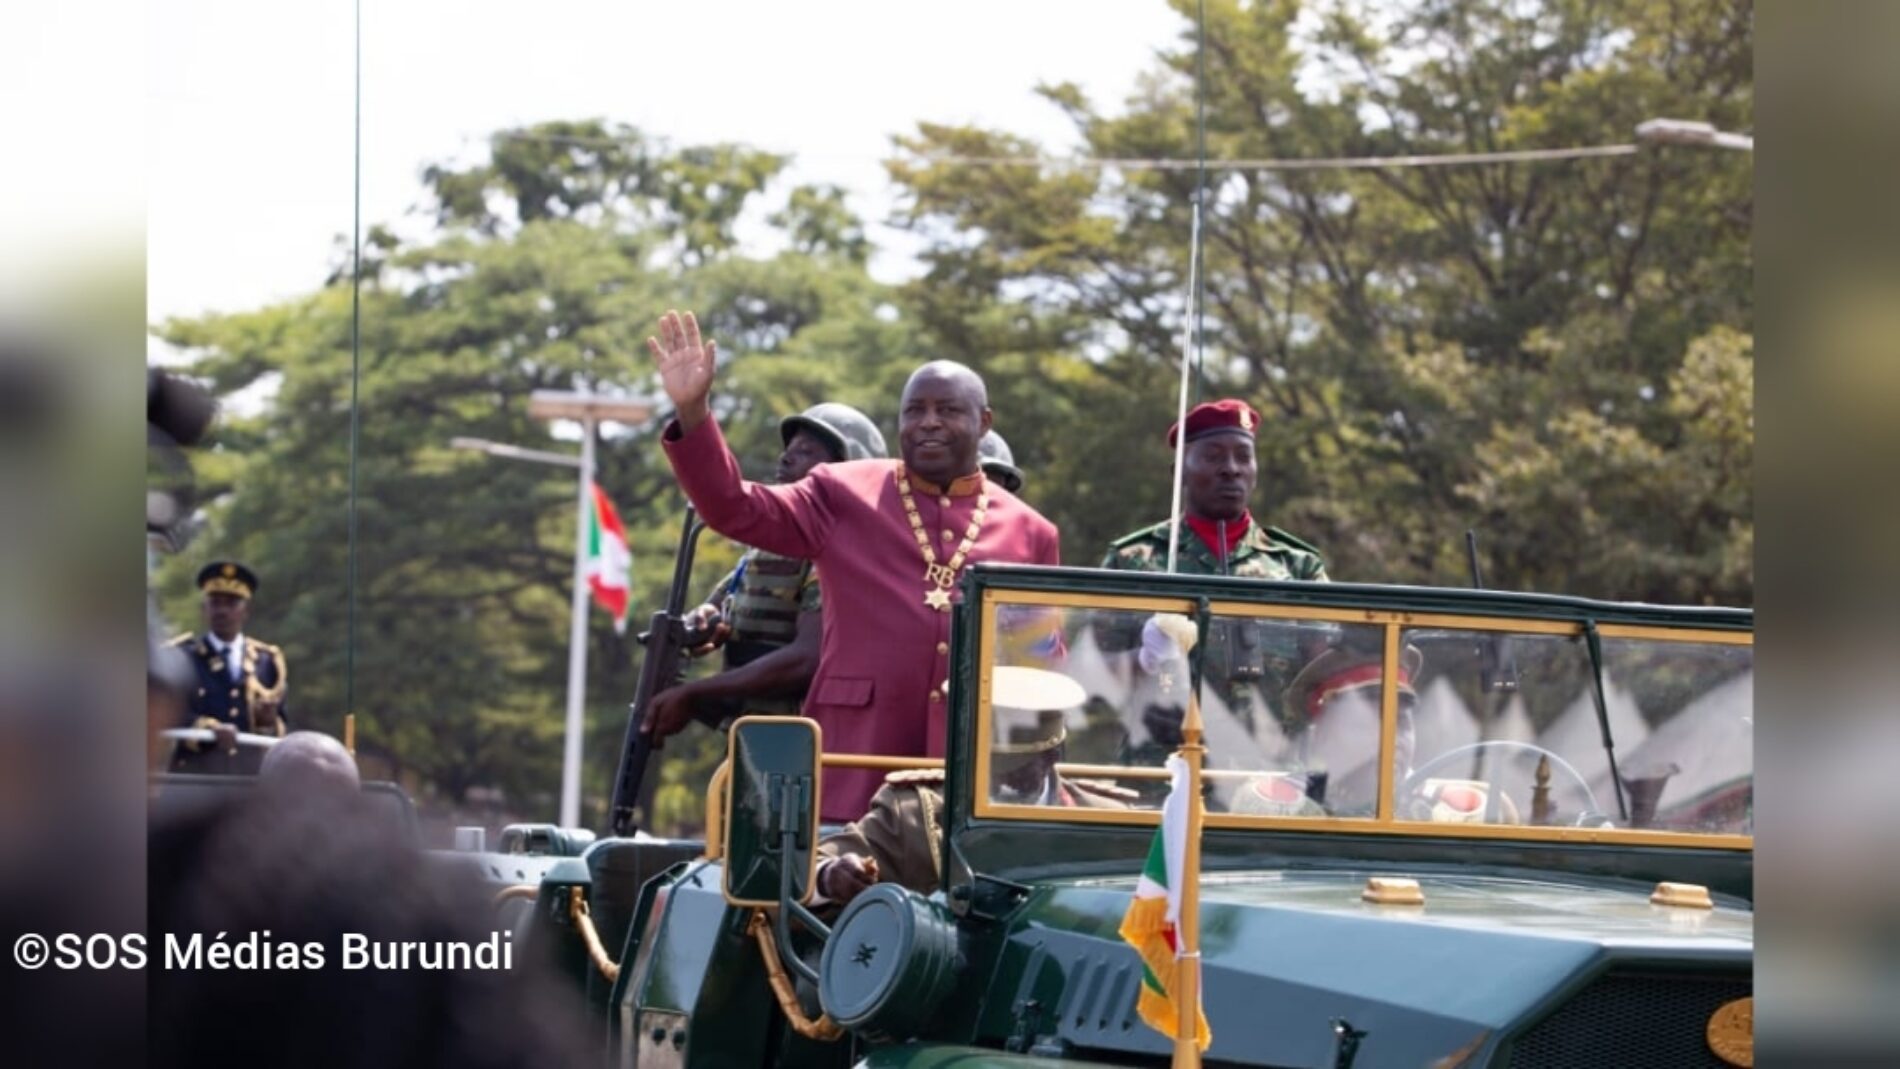 Burundi : nchi imeorodheshwa katika nchi za kwanza ambako rushwa imekithiri